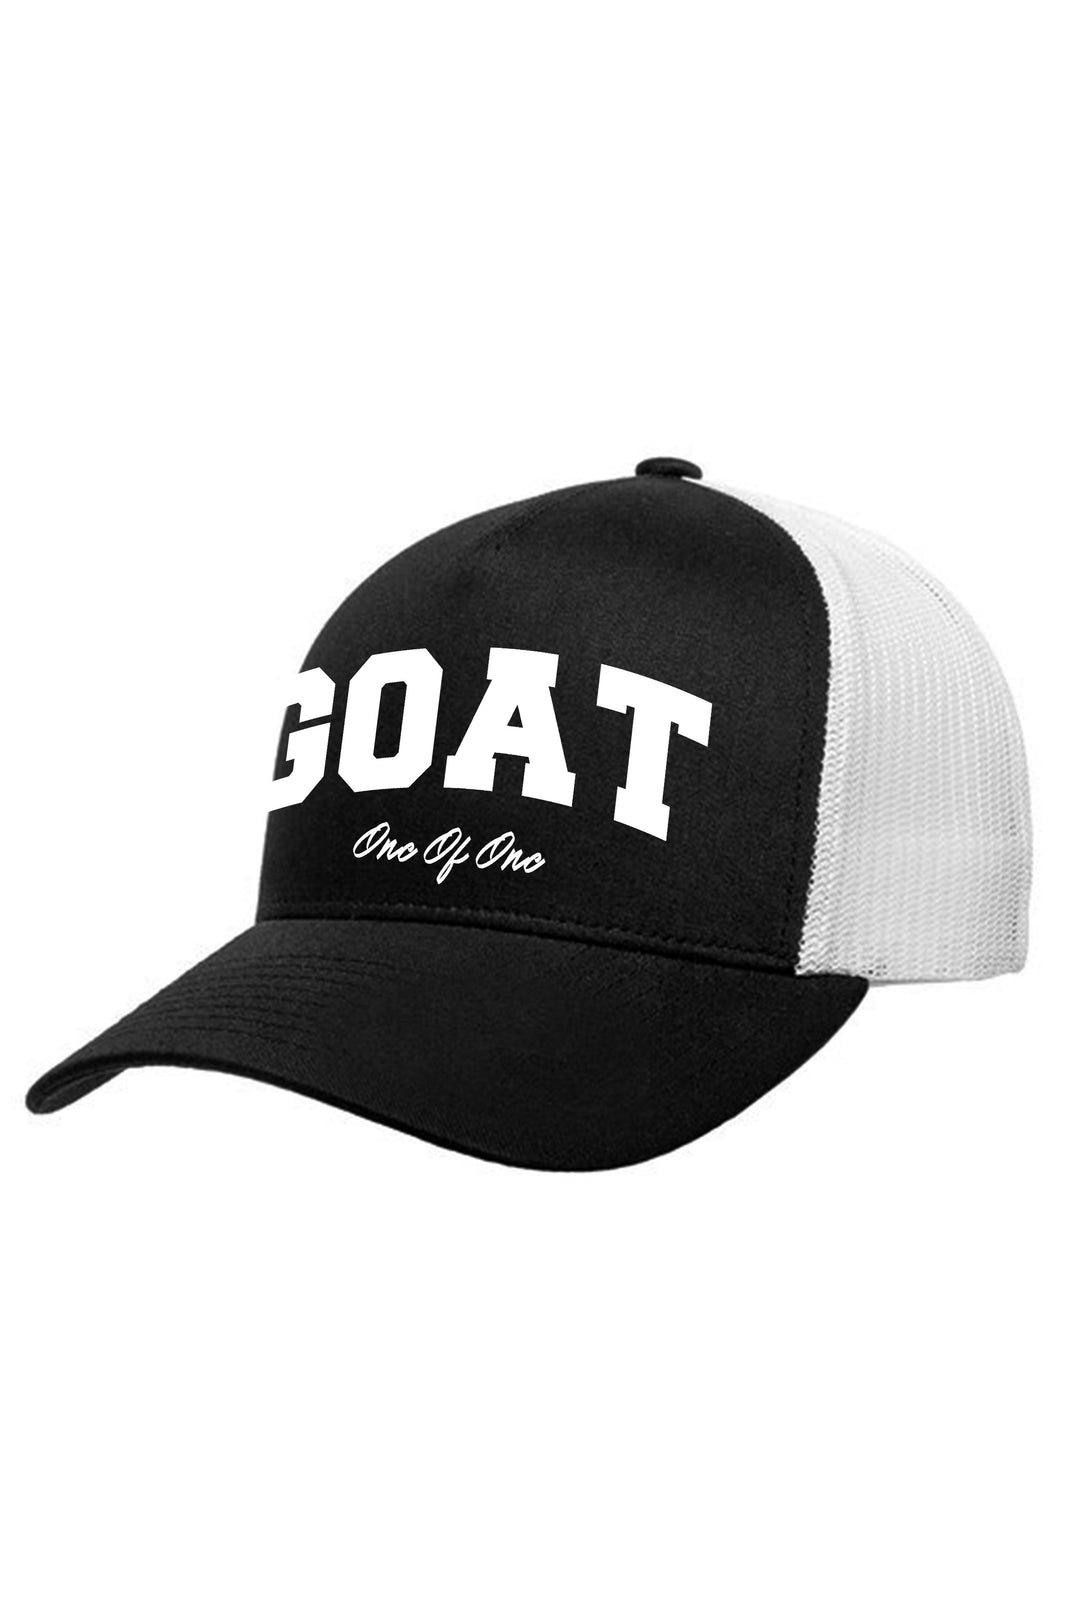 Goat Retro Trucker Hat (White Logo) - Zamage